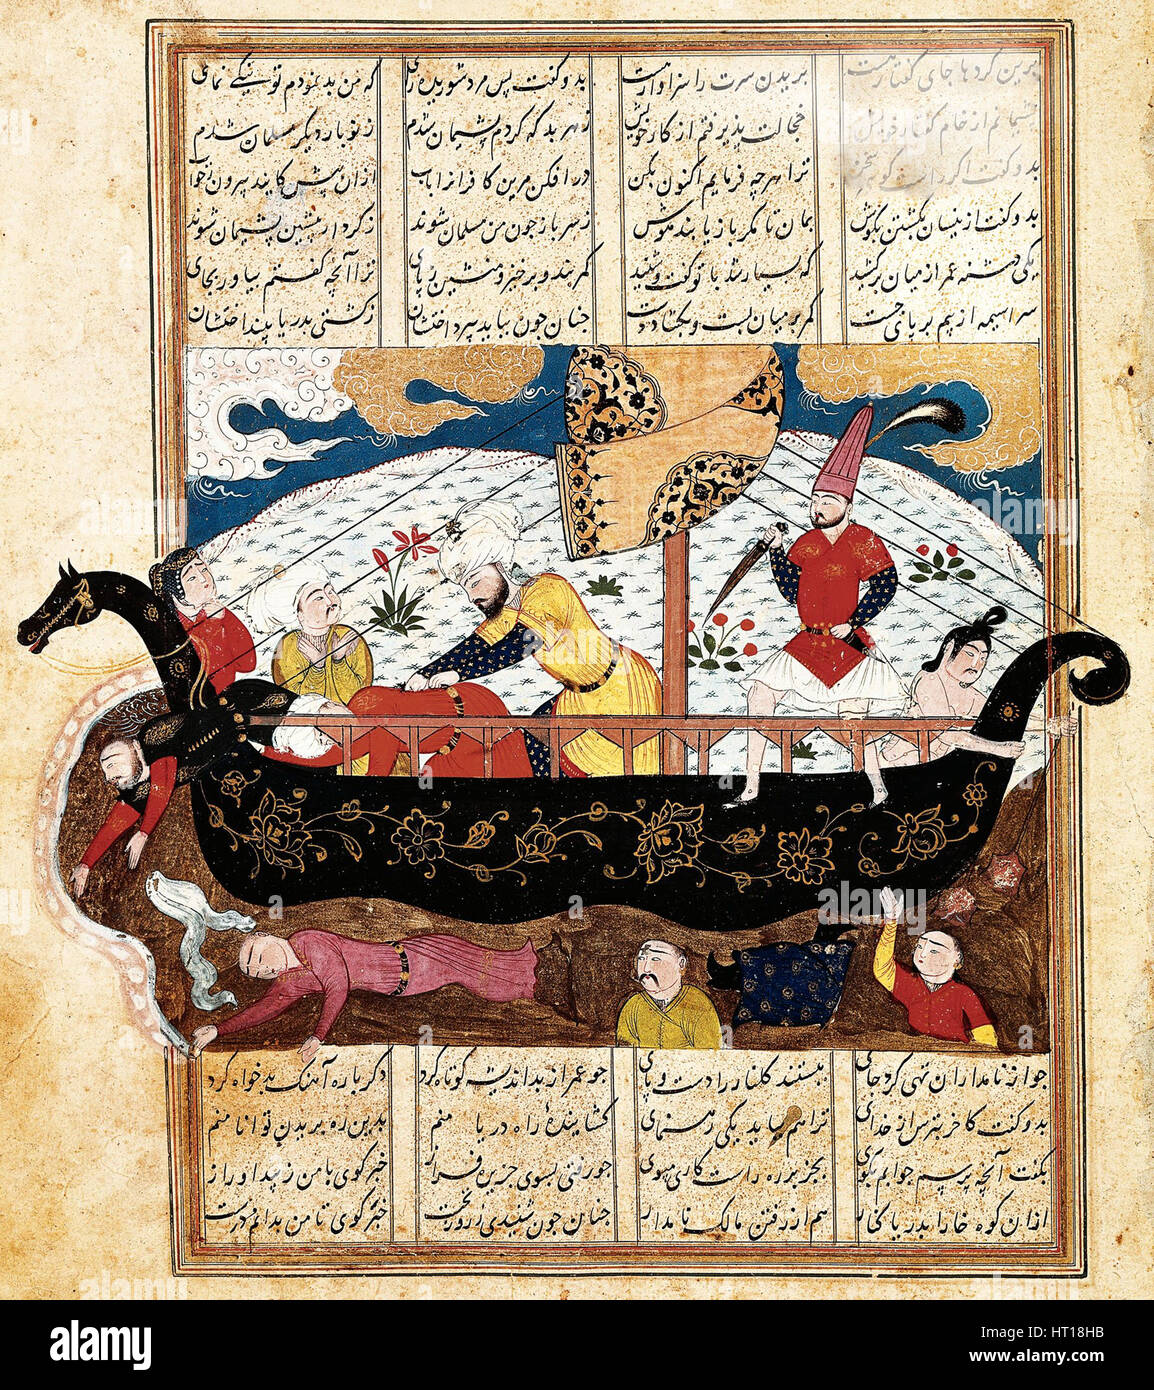 Buque Mercante atacado por piratas, del siglo XV. Artista: Anónimo Foto de stock